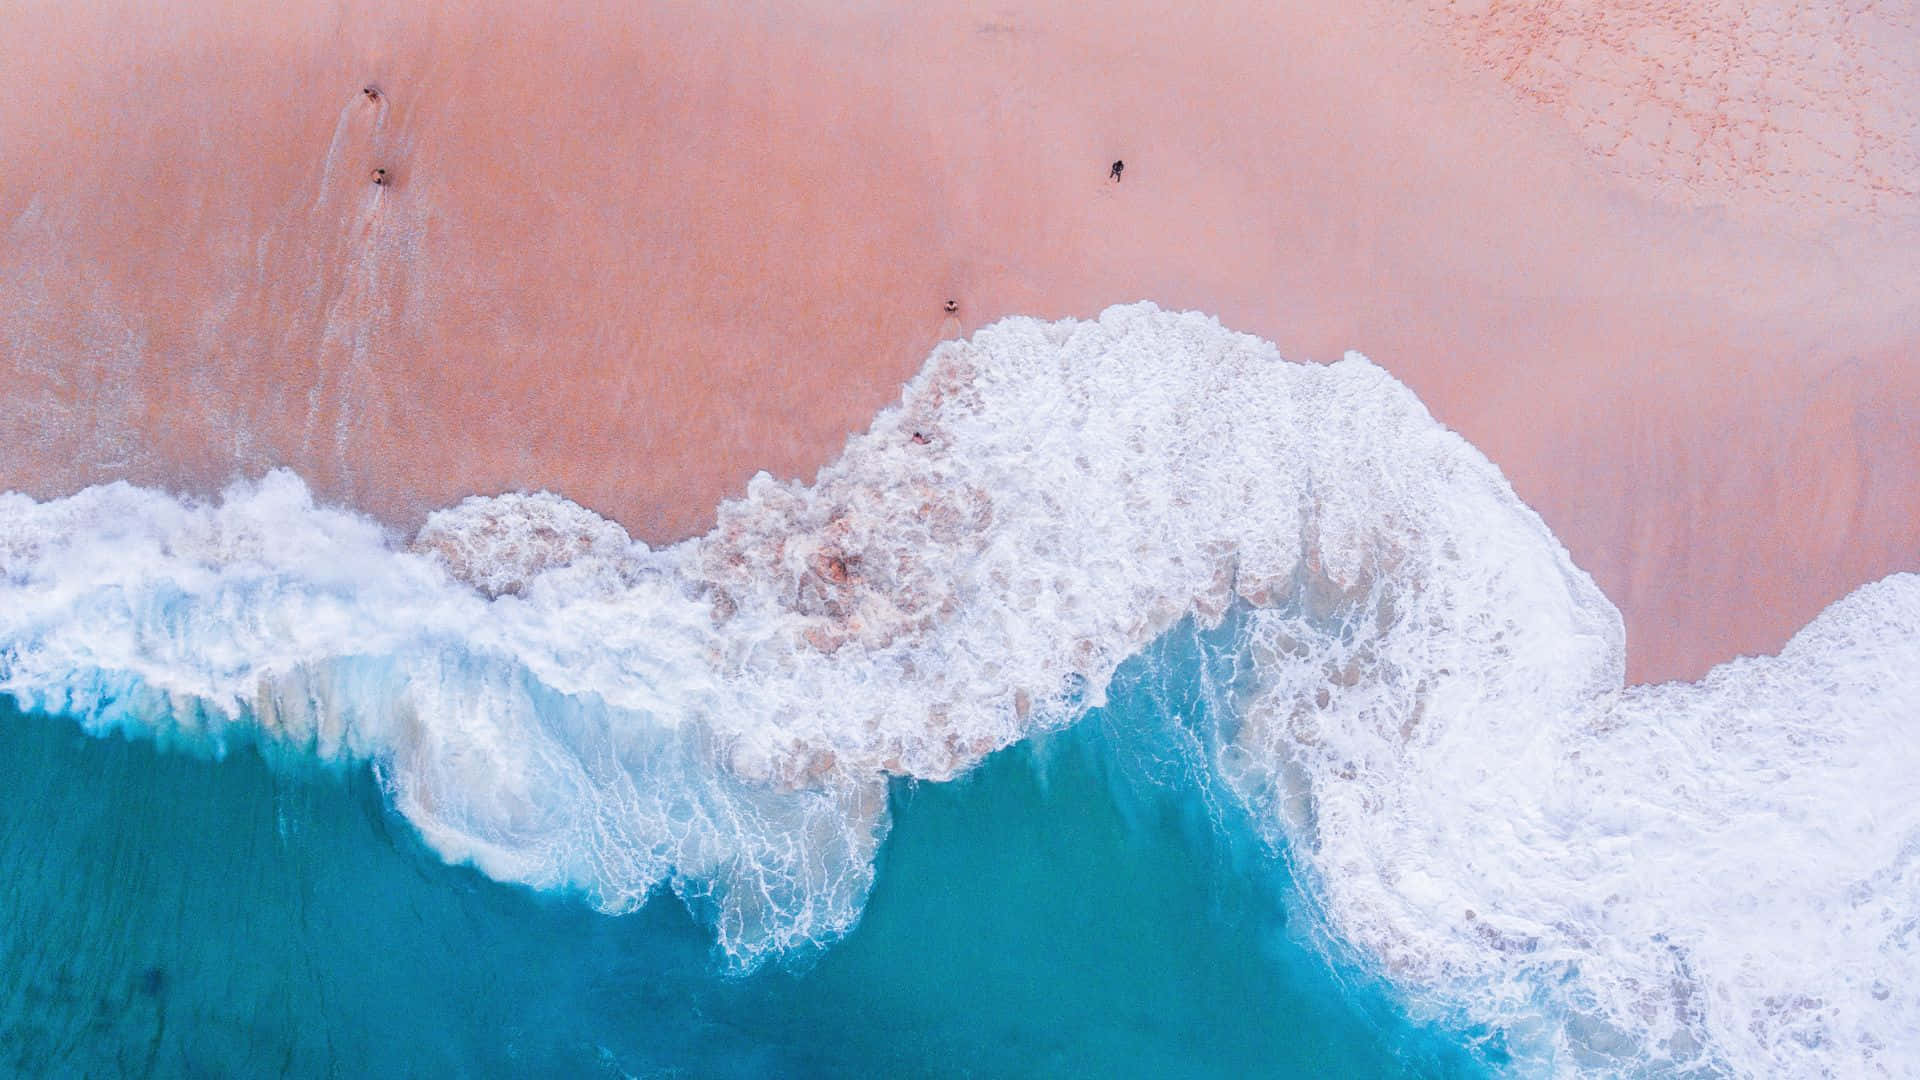 Unavista Impresionante De La Playa Rosa En El Paraíso. Fondo de pantalla